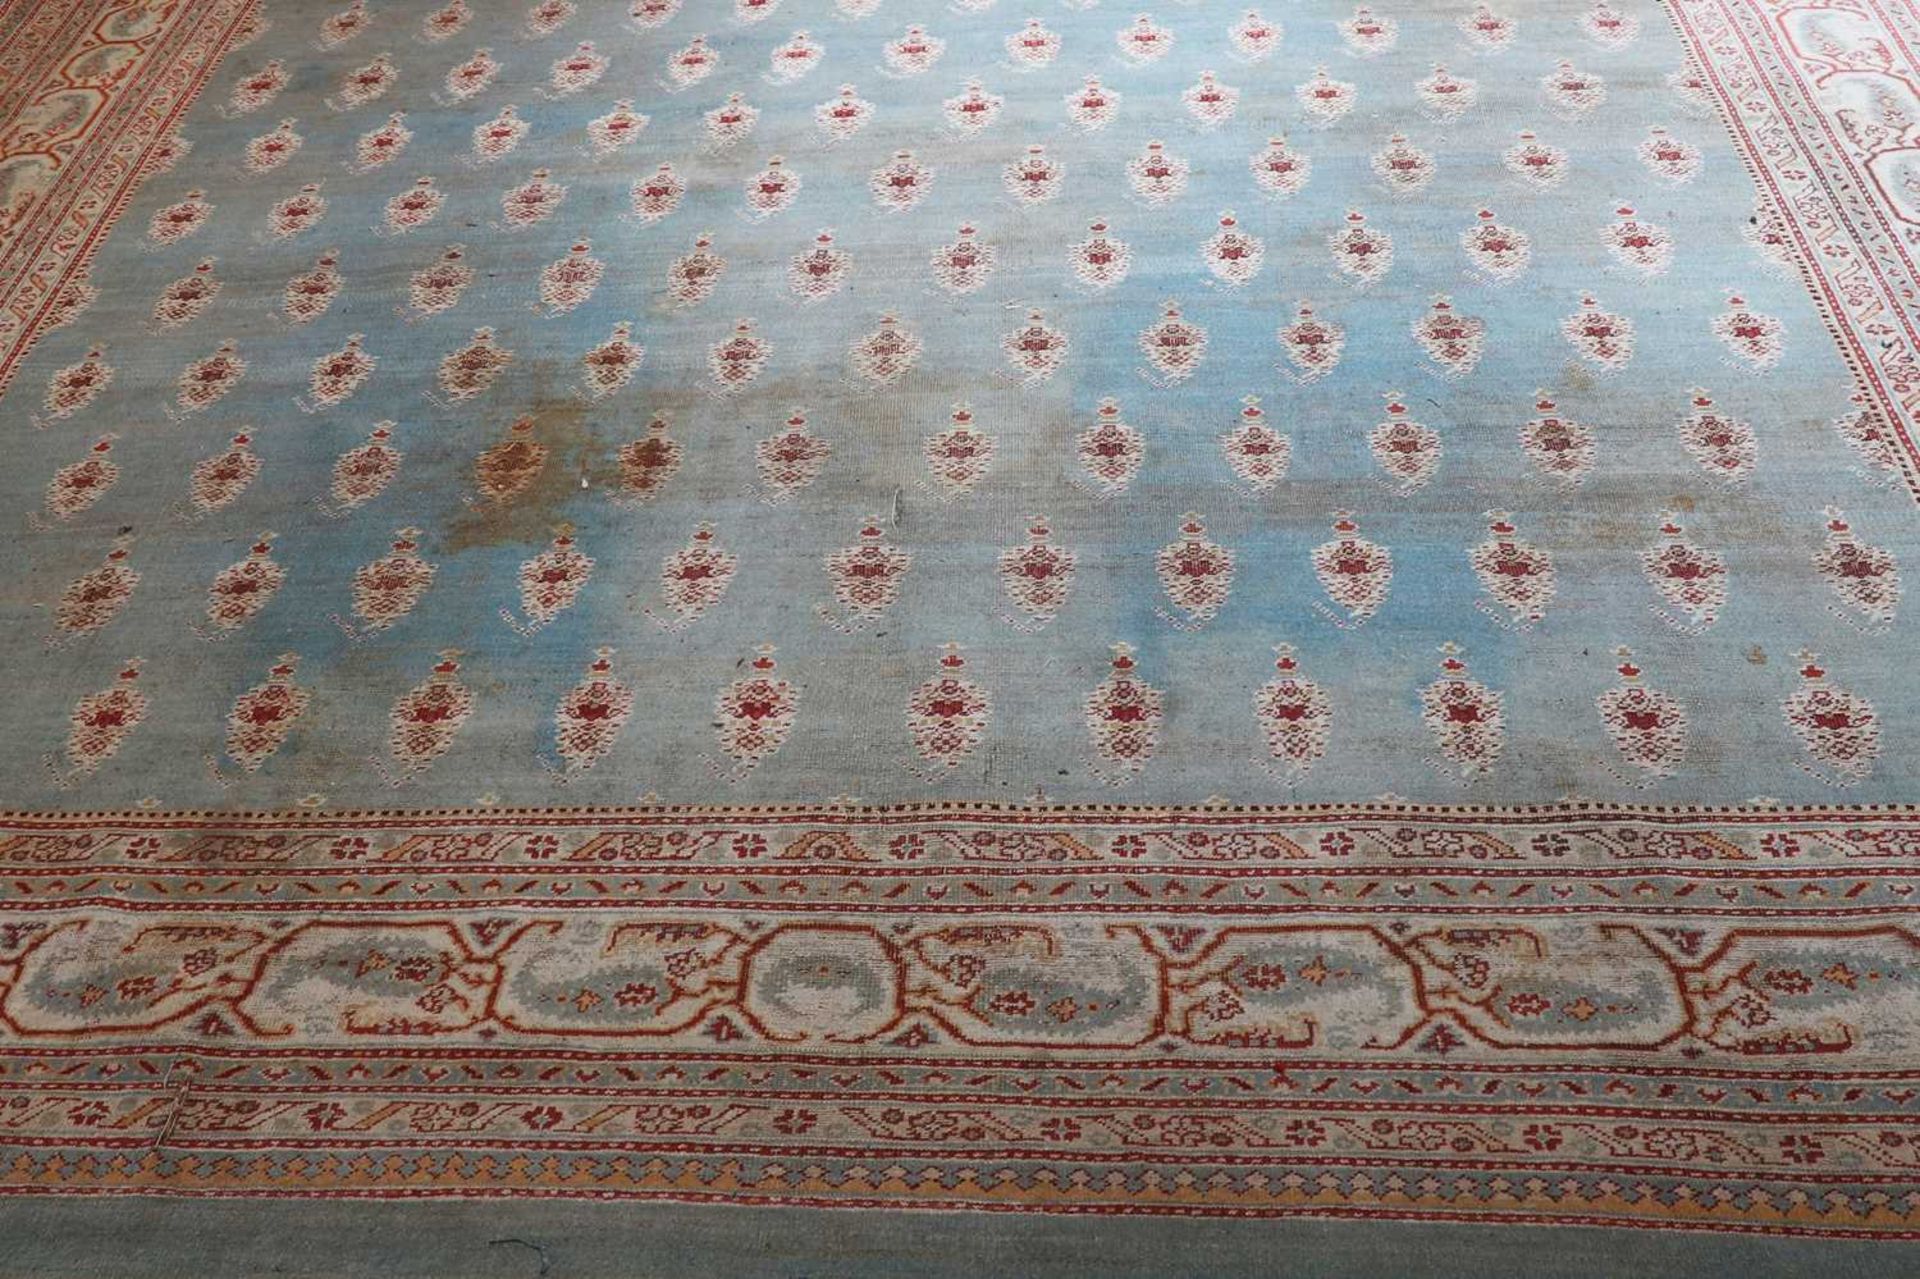 ☘ A large blue Amritsar carpet, - Image 3 of 38